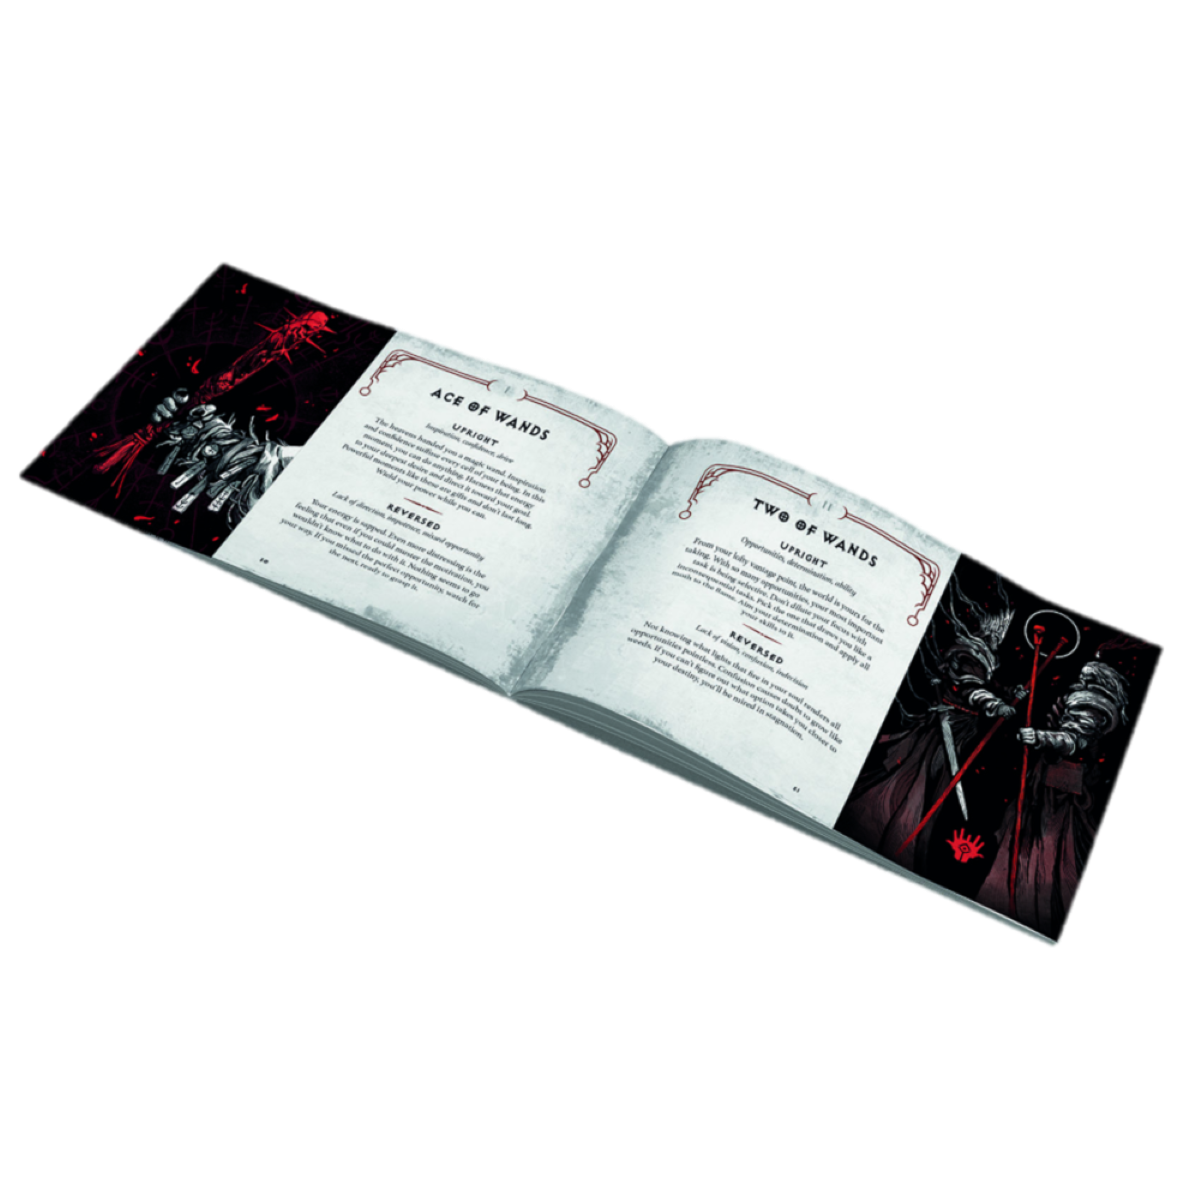 Reiseführer Tarotdeck DIABLO The Diablo: und Handbuch Sanctuary und Blizzard Deck